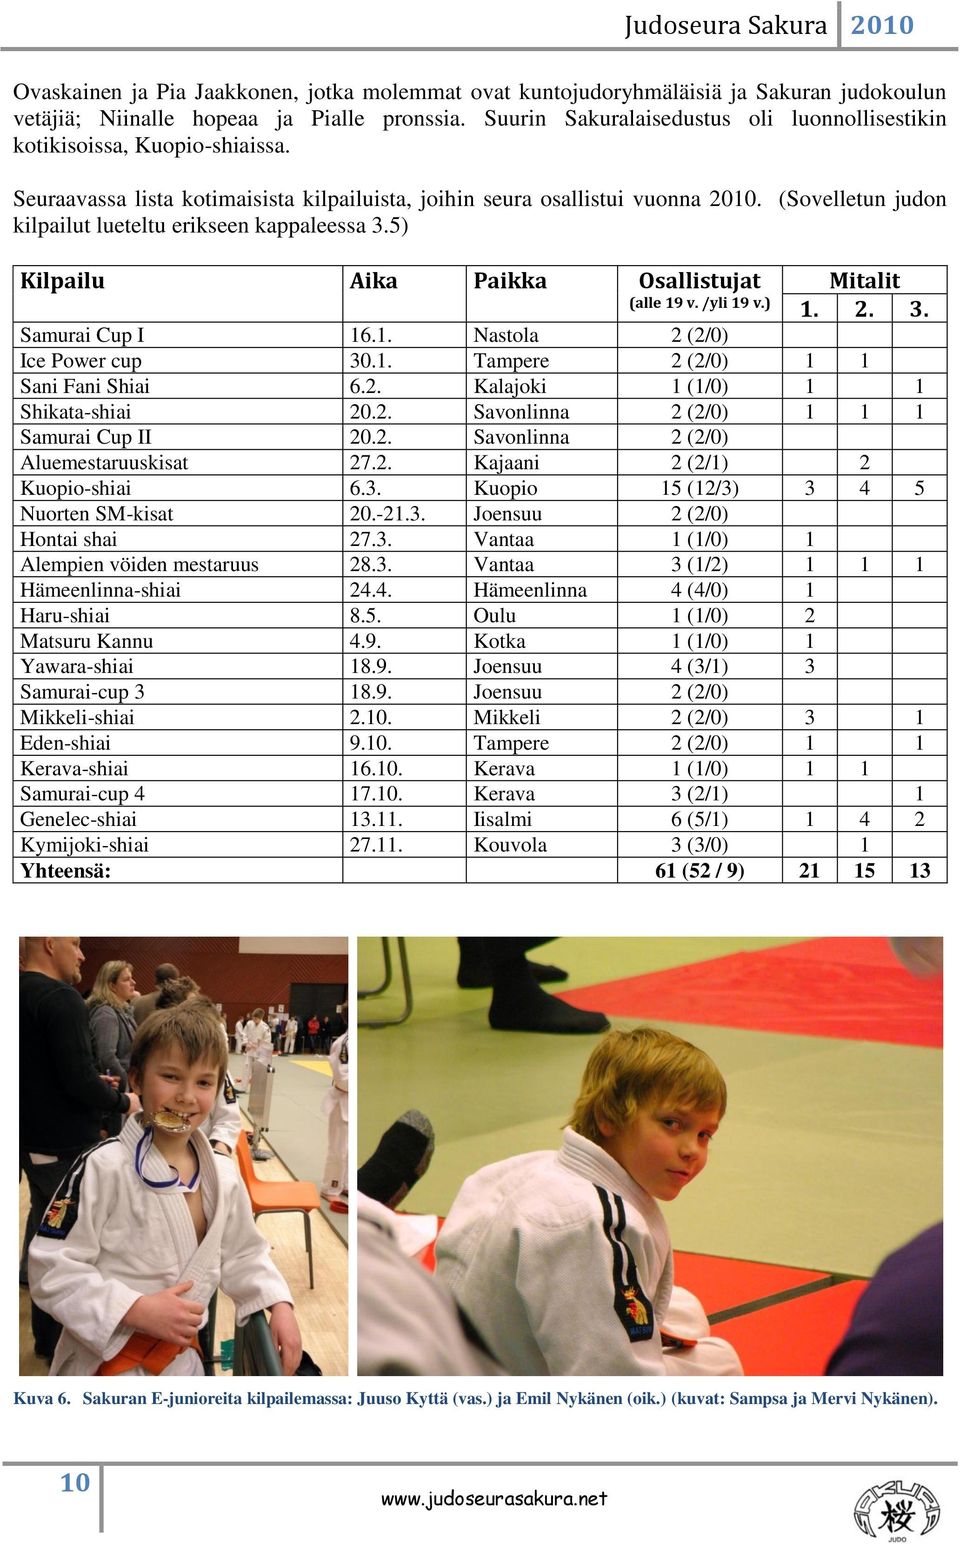 (Sovelletun judon kilpailut lueteltu erikseen kappaleessa 3.5) Kilpailu Aika Paikka Osallistujat (alle 19 v. /yli 19 v.) Mitalit 1. 2. 3. Samurai Cup I 16.1. Nastola 2 (2/0) Ice Power cup 30.1. Tampere 2 (2/0) 1 1 Sani Fani Shiai 6.